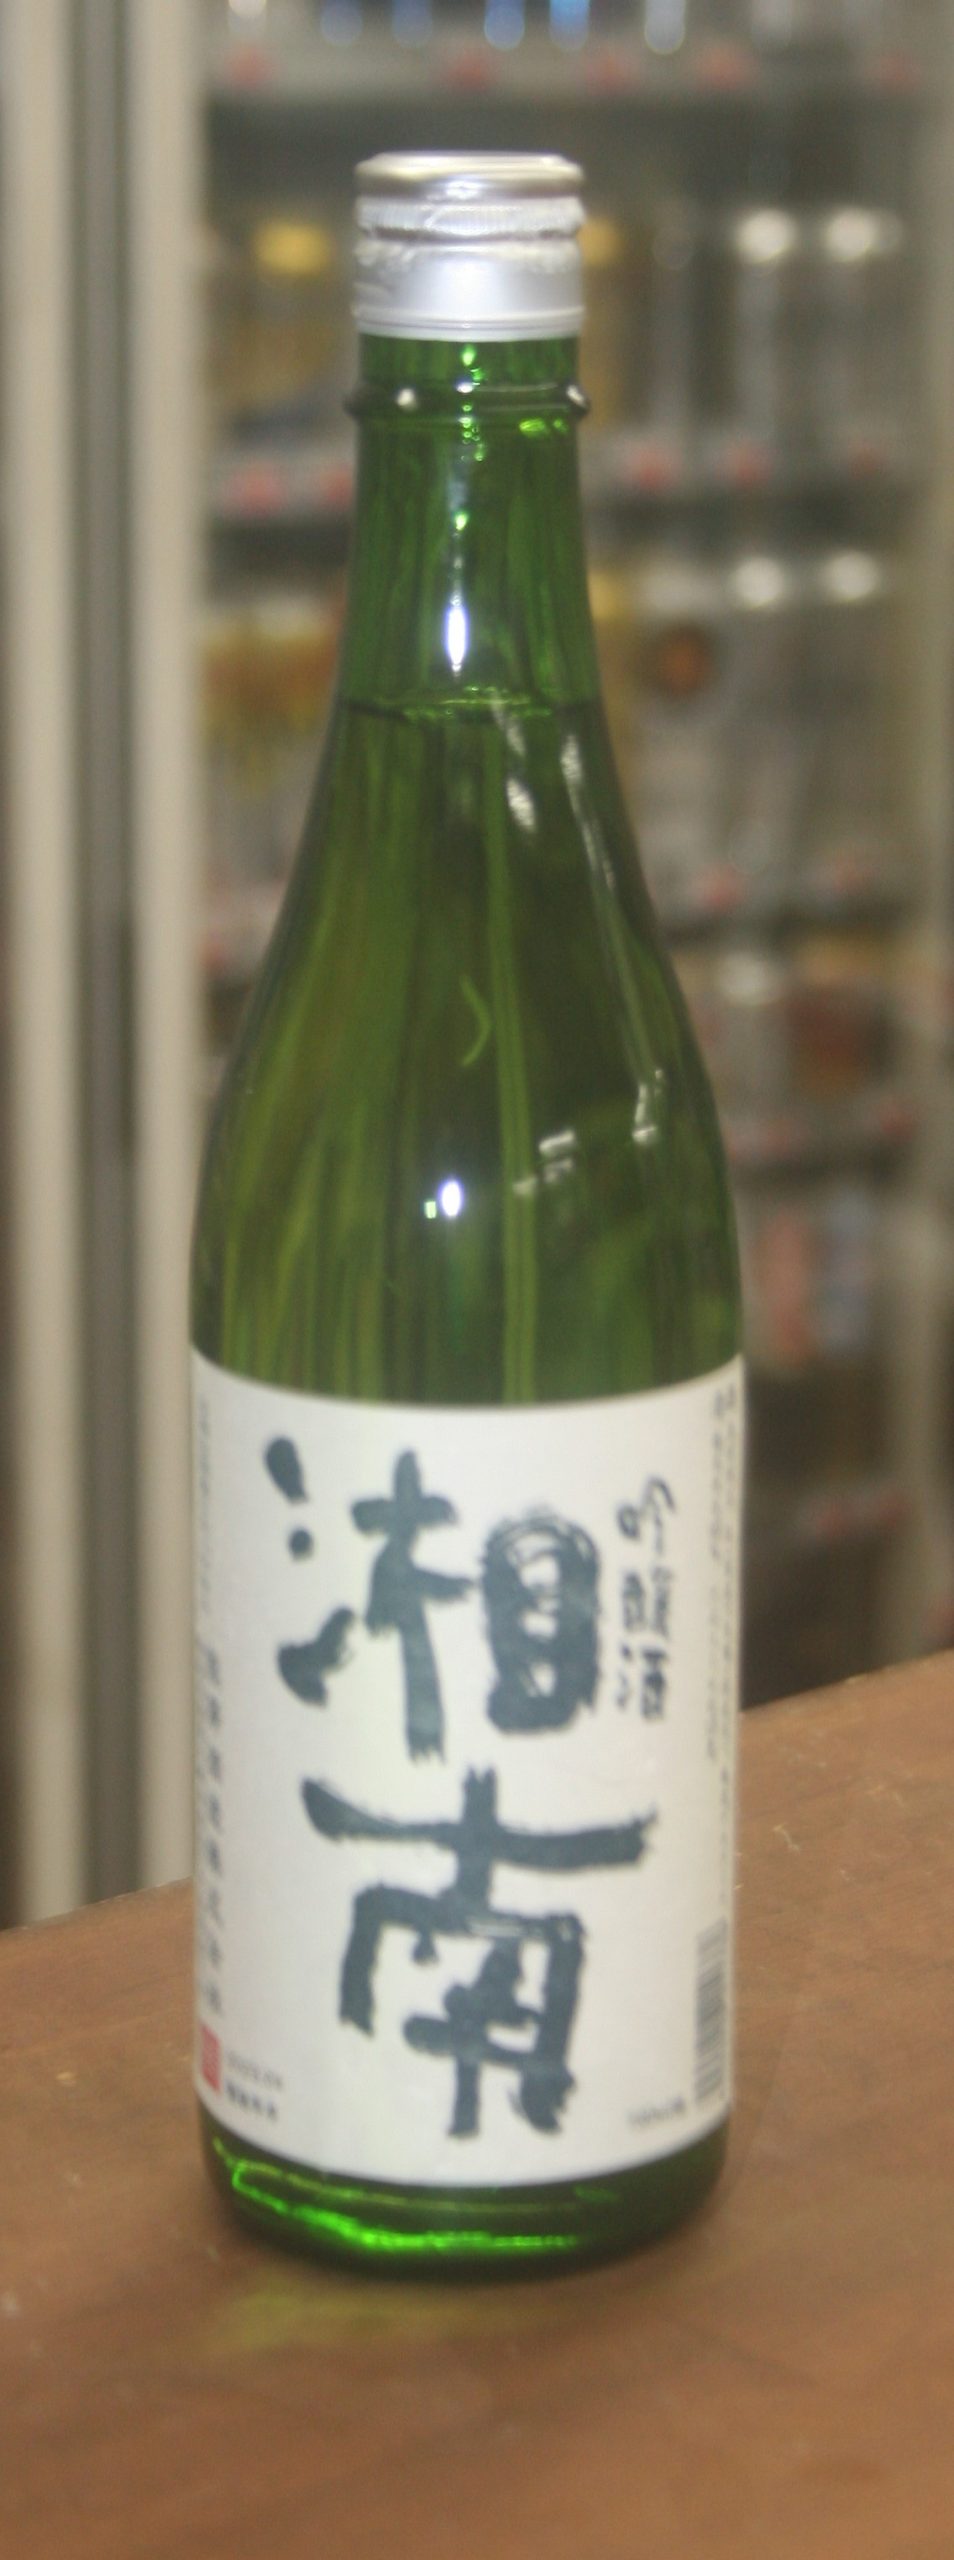 熊澤酒造『湘南』吟醸酒